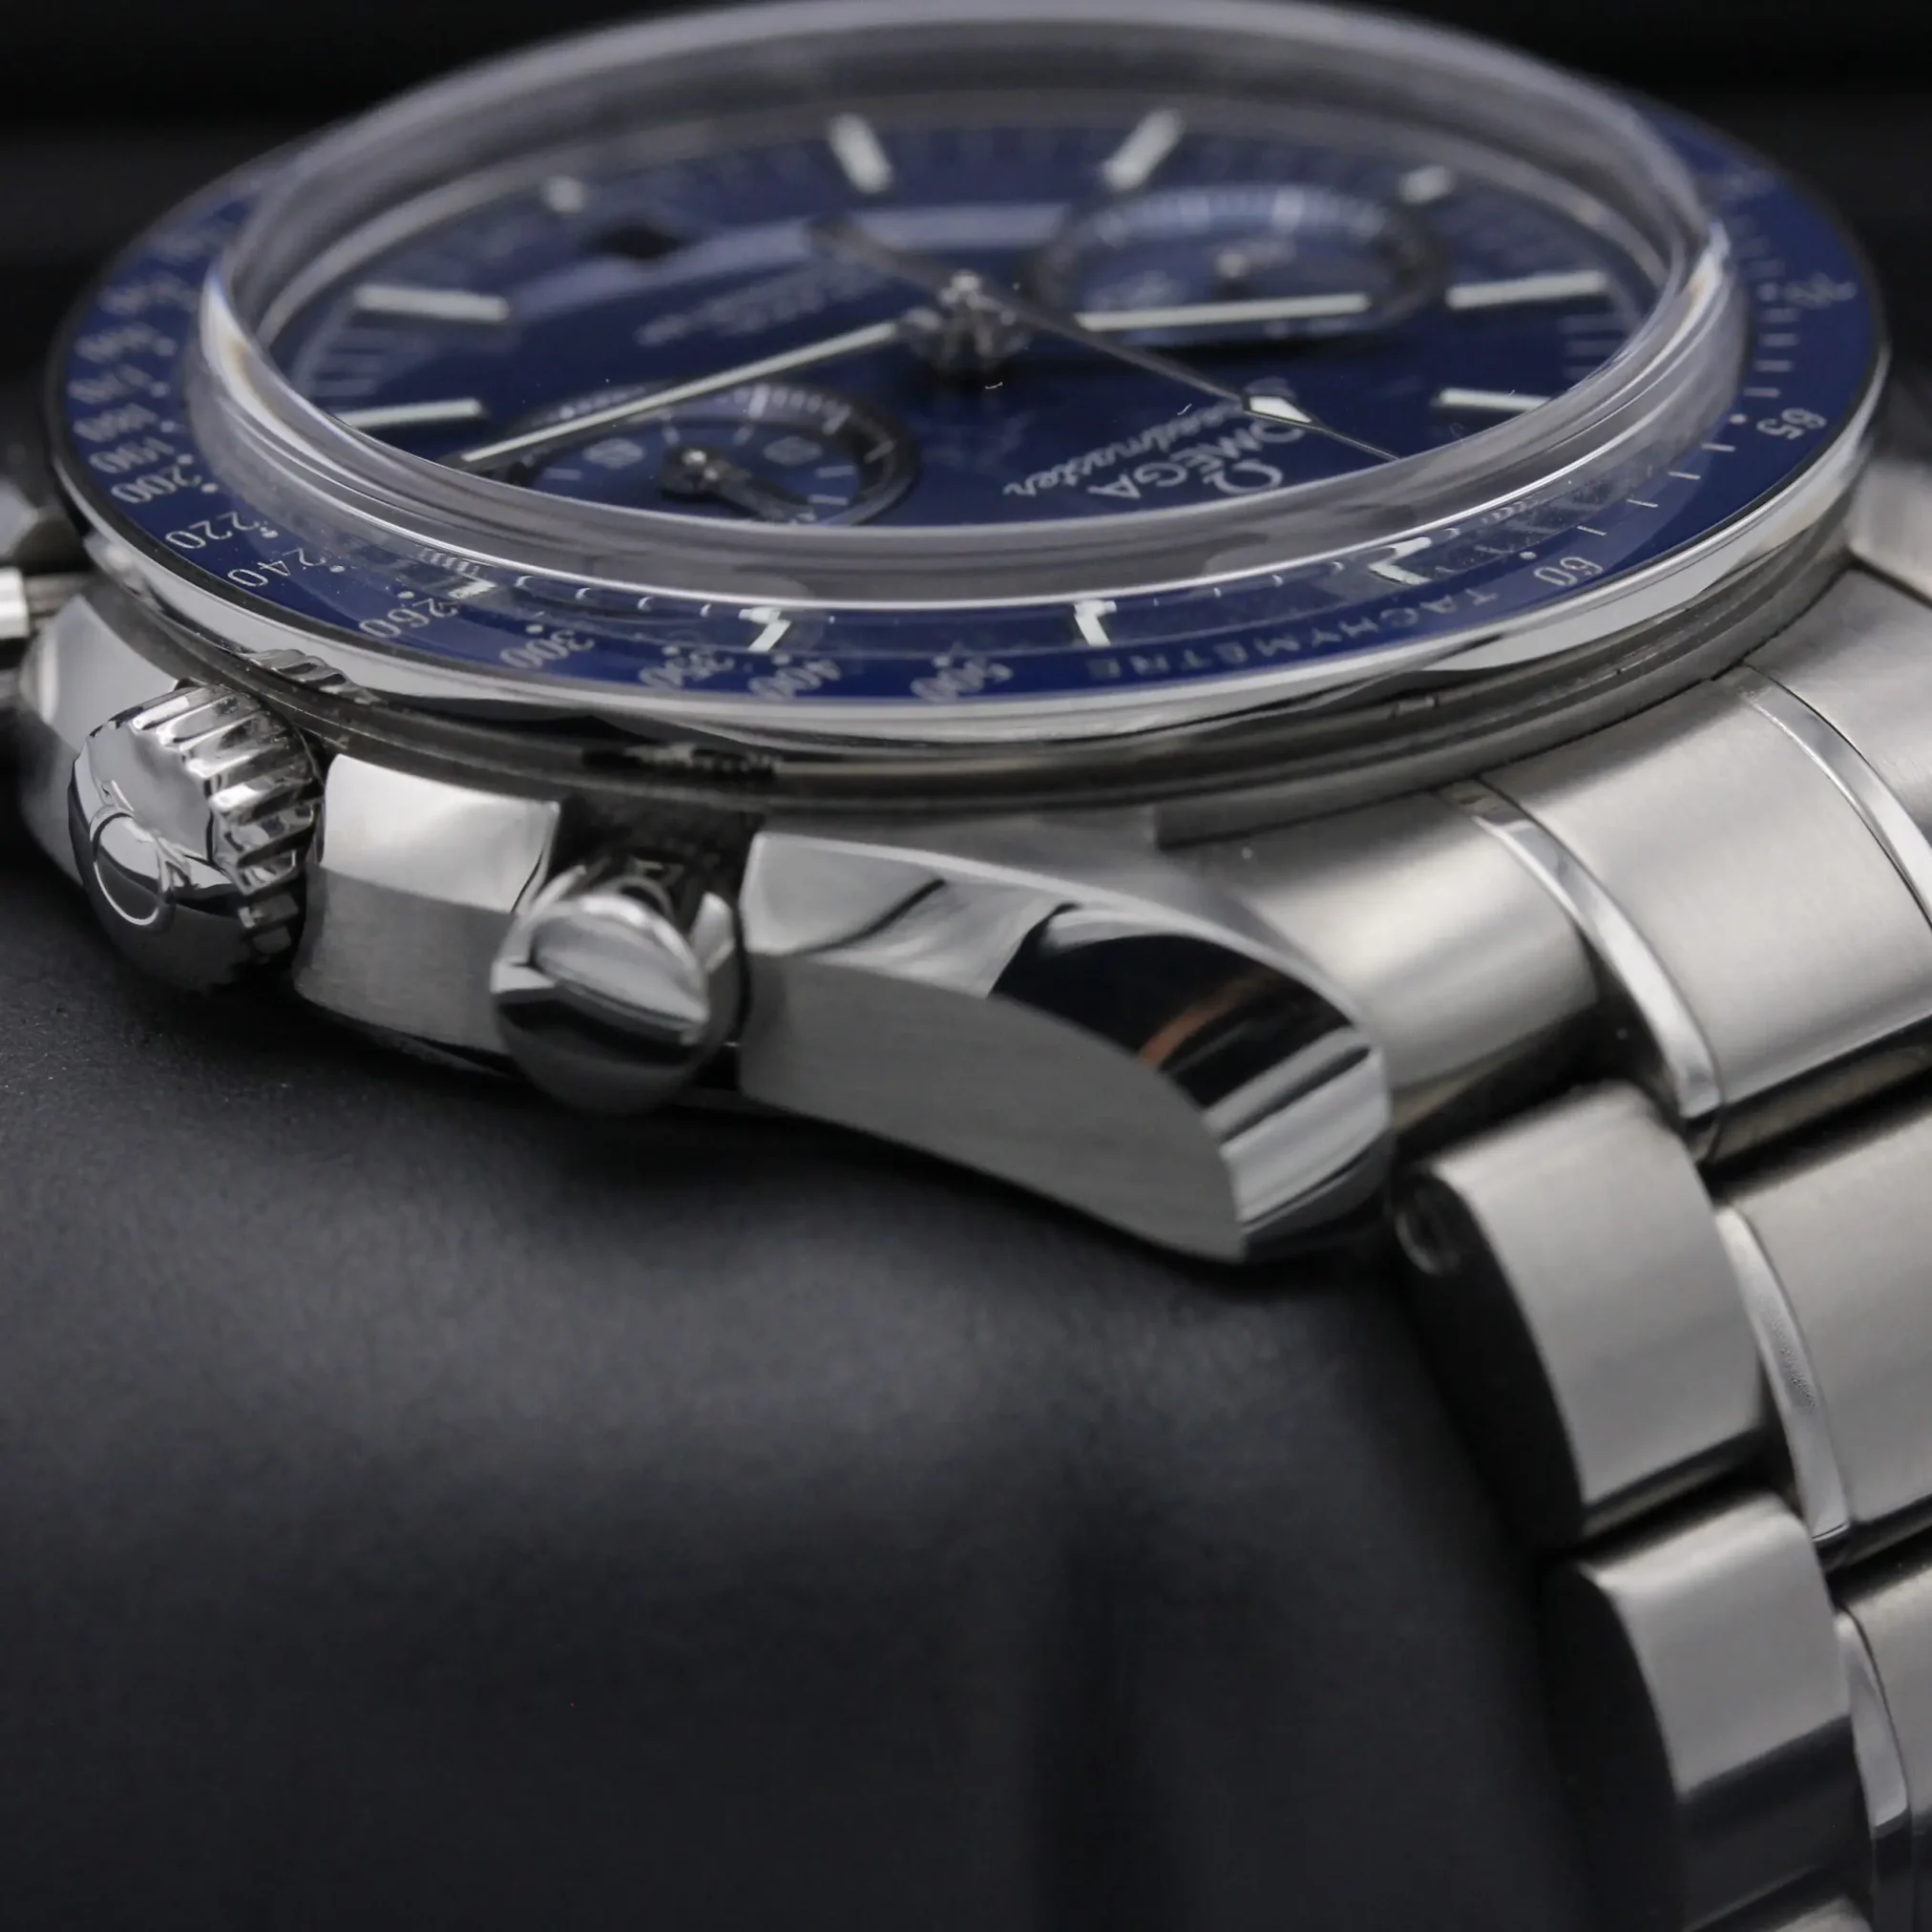 Đồng hồ Omega Seamaster Two Counters Chronometer Chronograph 311.90.44.51.03.001 mặt số màu xanh. Thiết kế lộ cơ. Dây đeo và thân vỏ bằng thép.